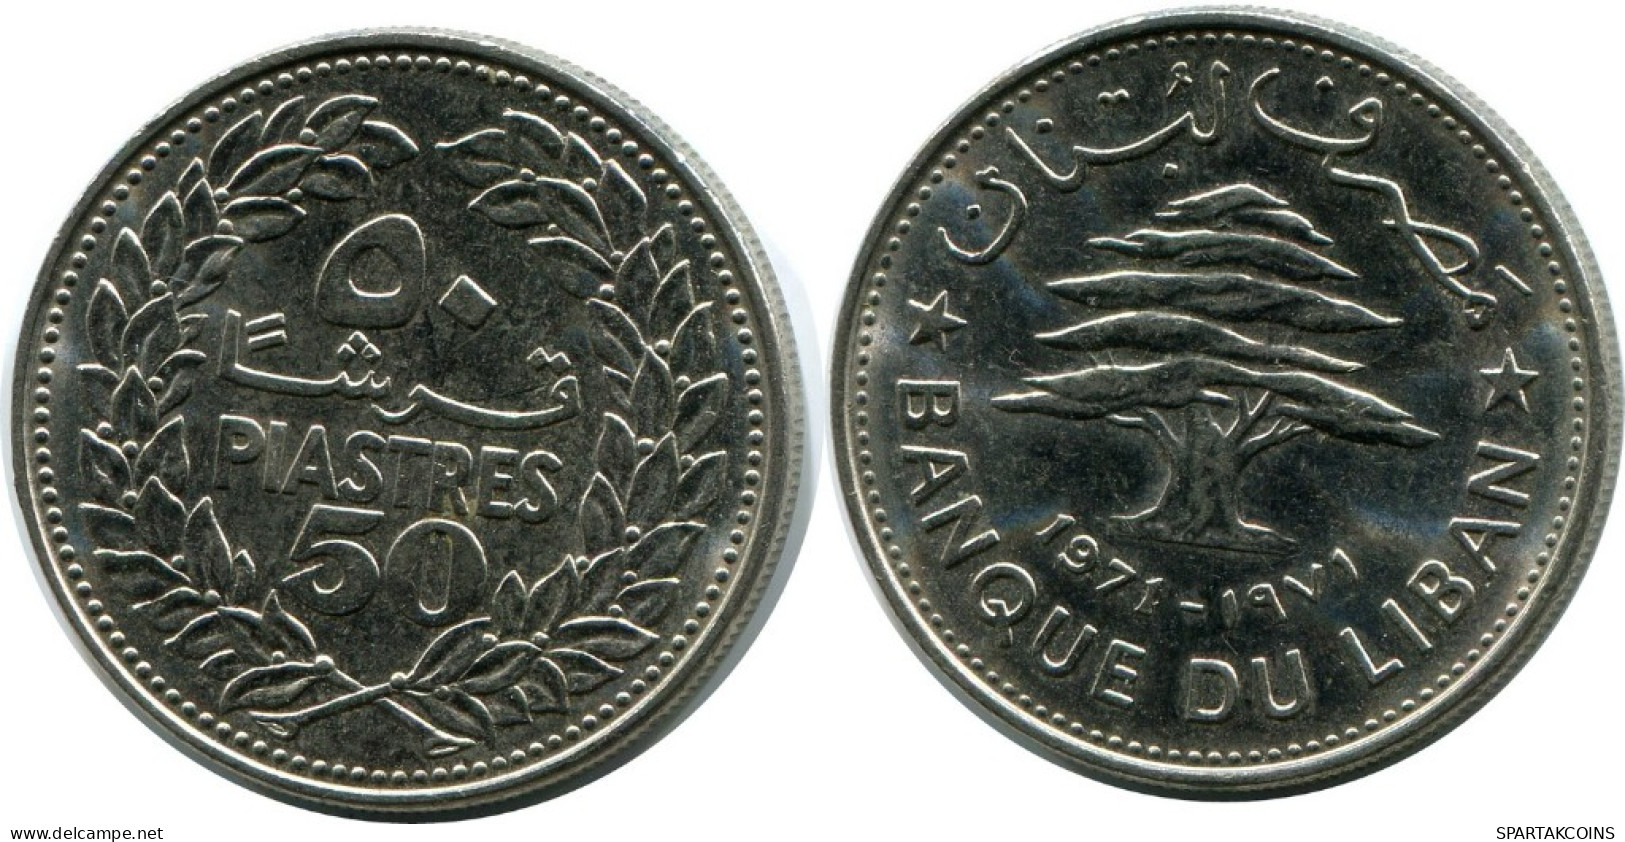 50 PIASTRES 1971 LEBANON Coin #AH803.U.A - Libanon